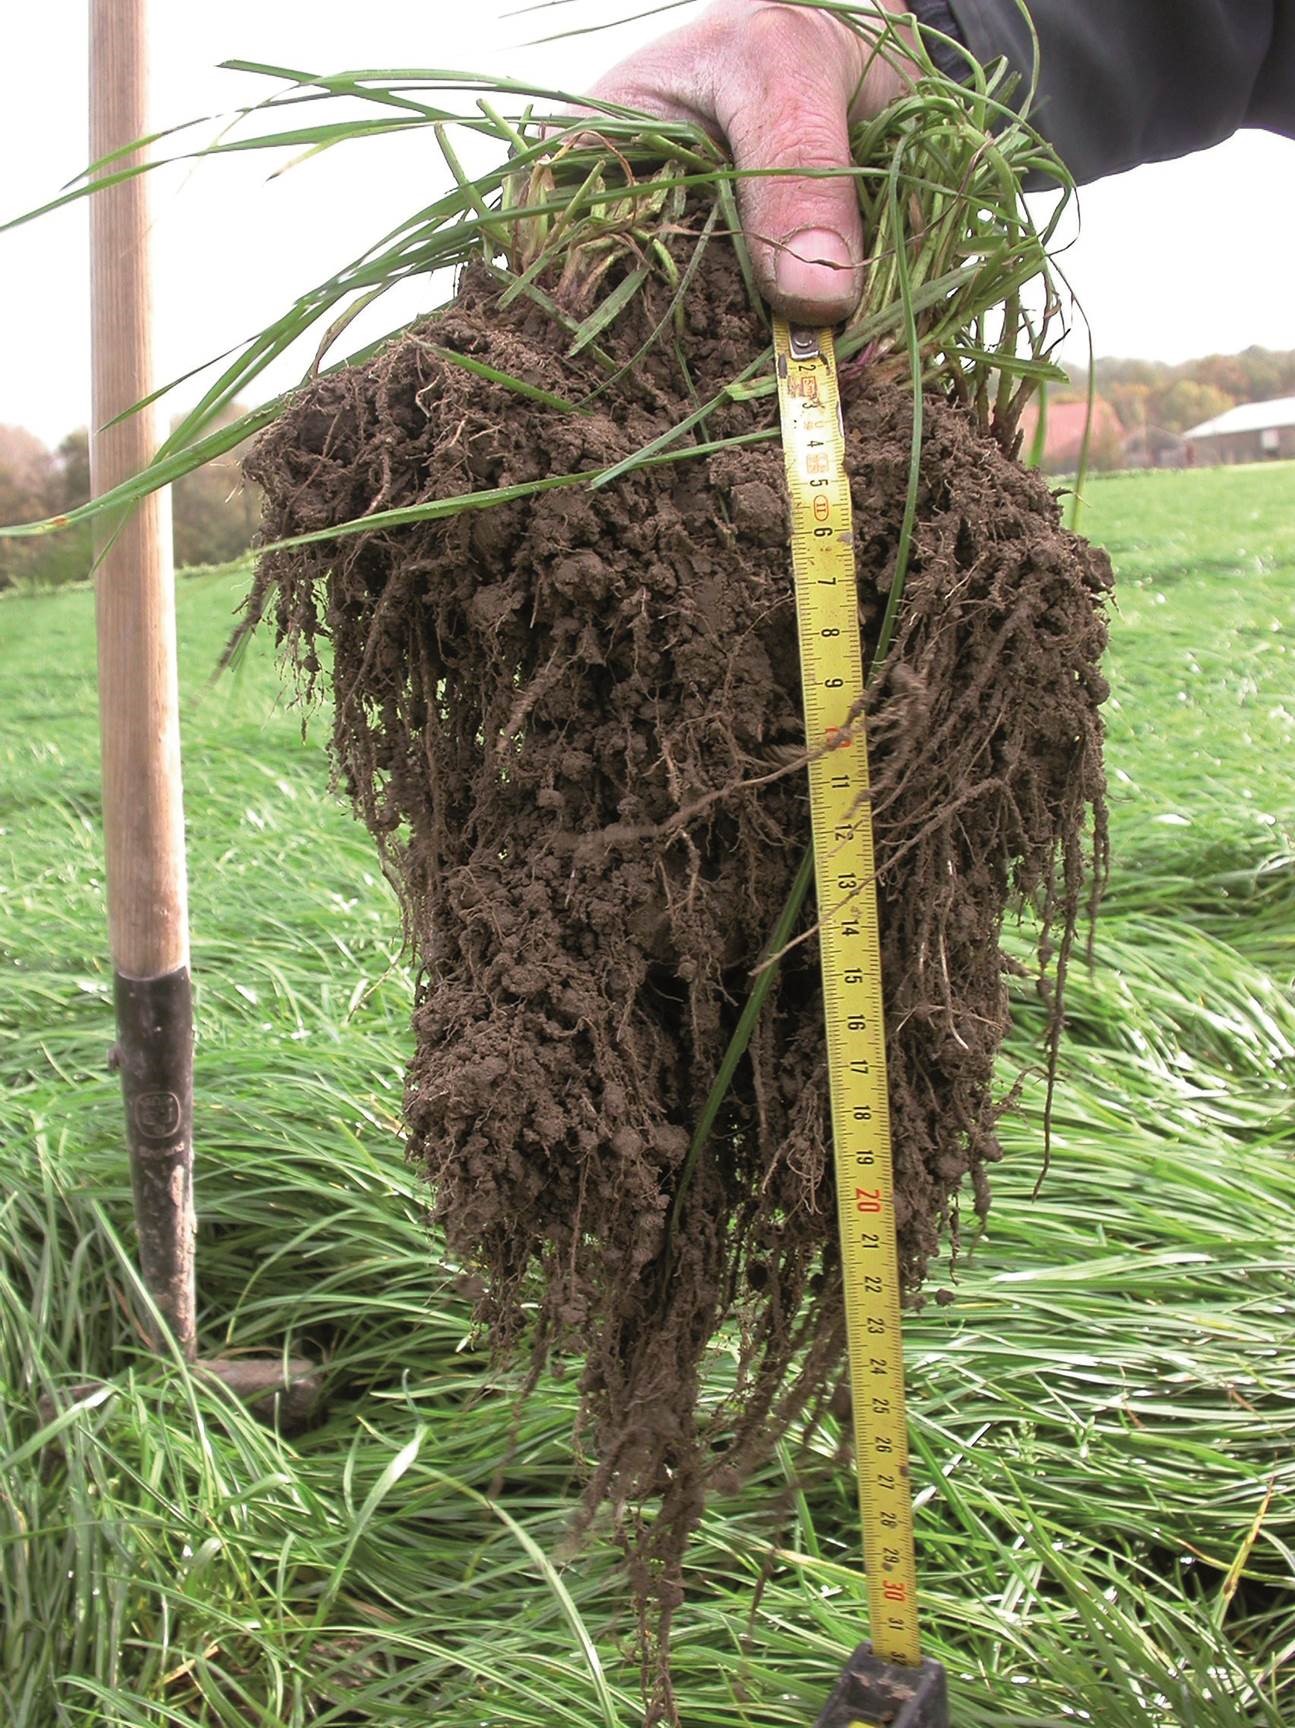 Biomassa (wortels) van gras voor opbouw organische stof in de bodem